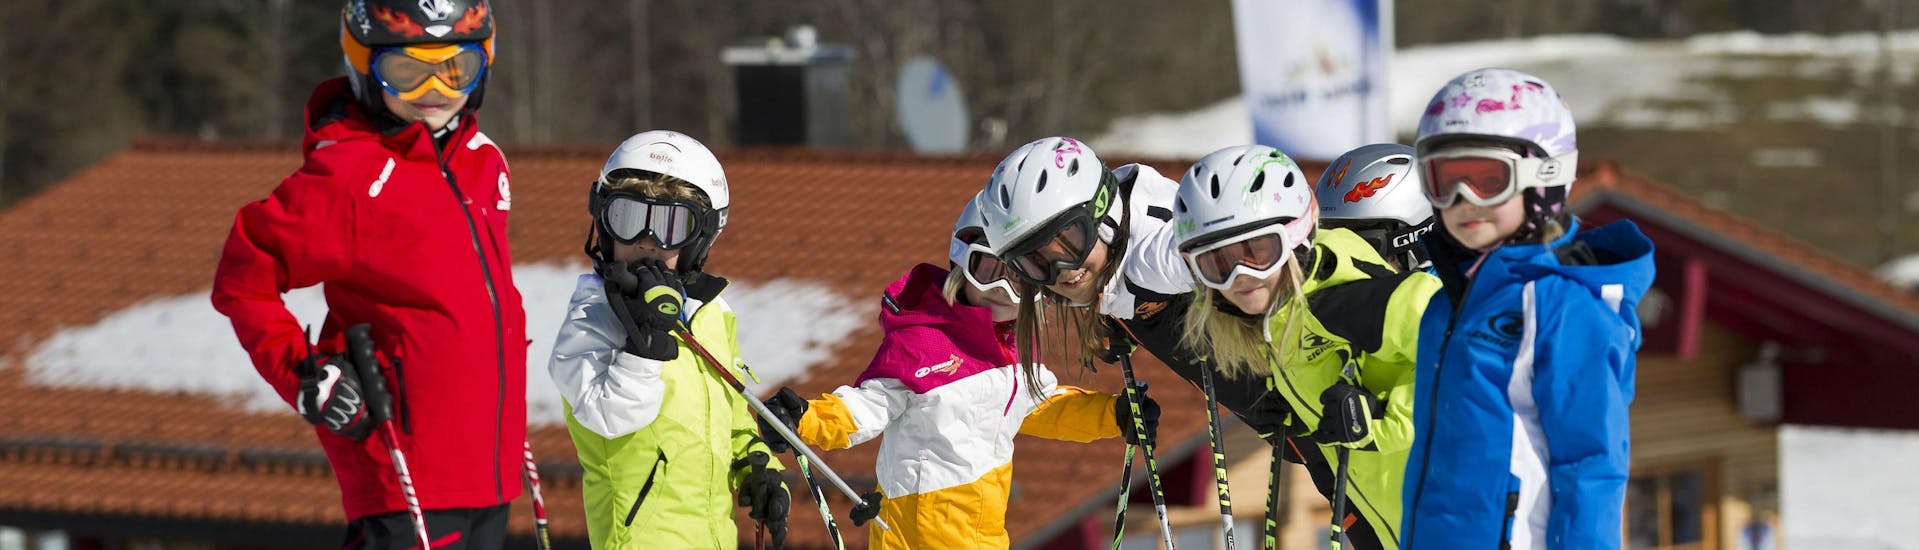 Privé skilessen voor kinderen van alle niveaus.